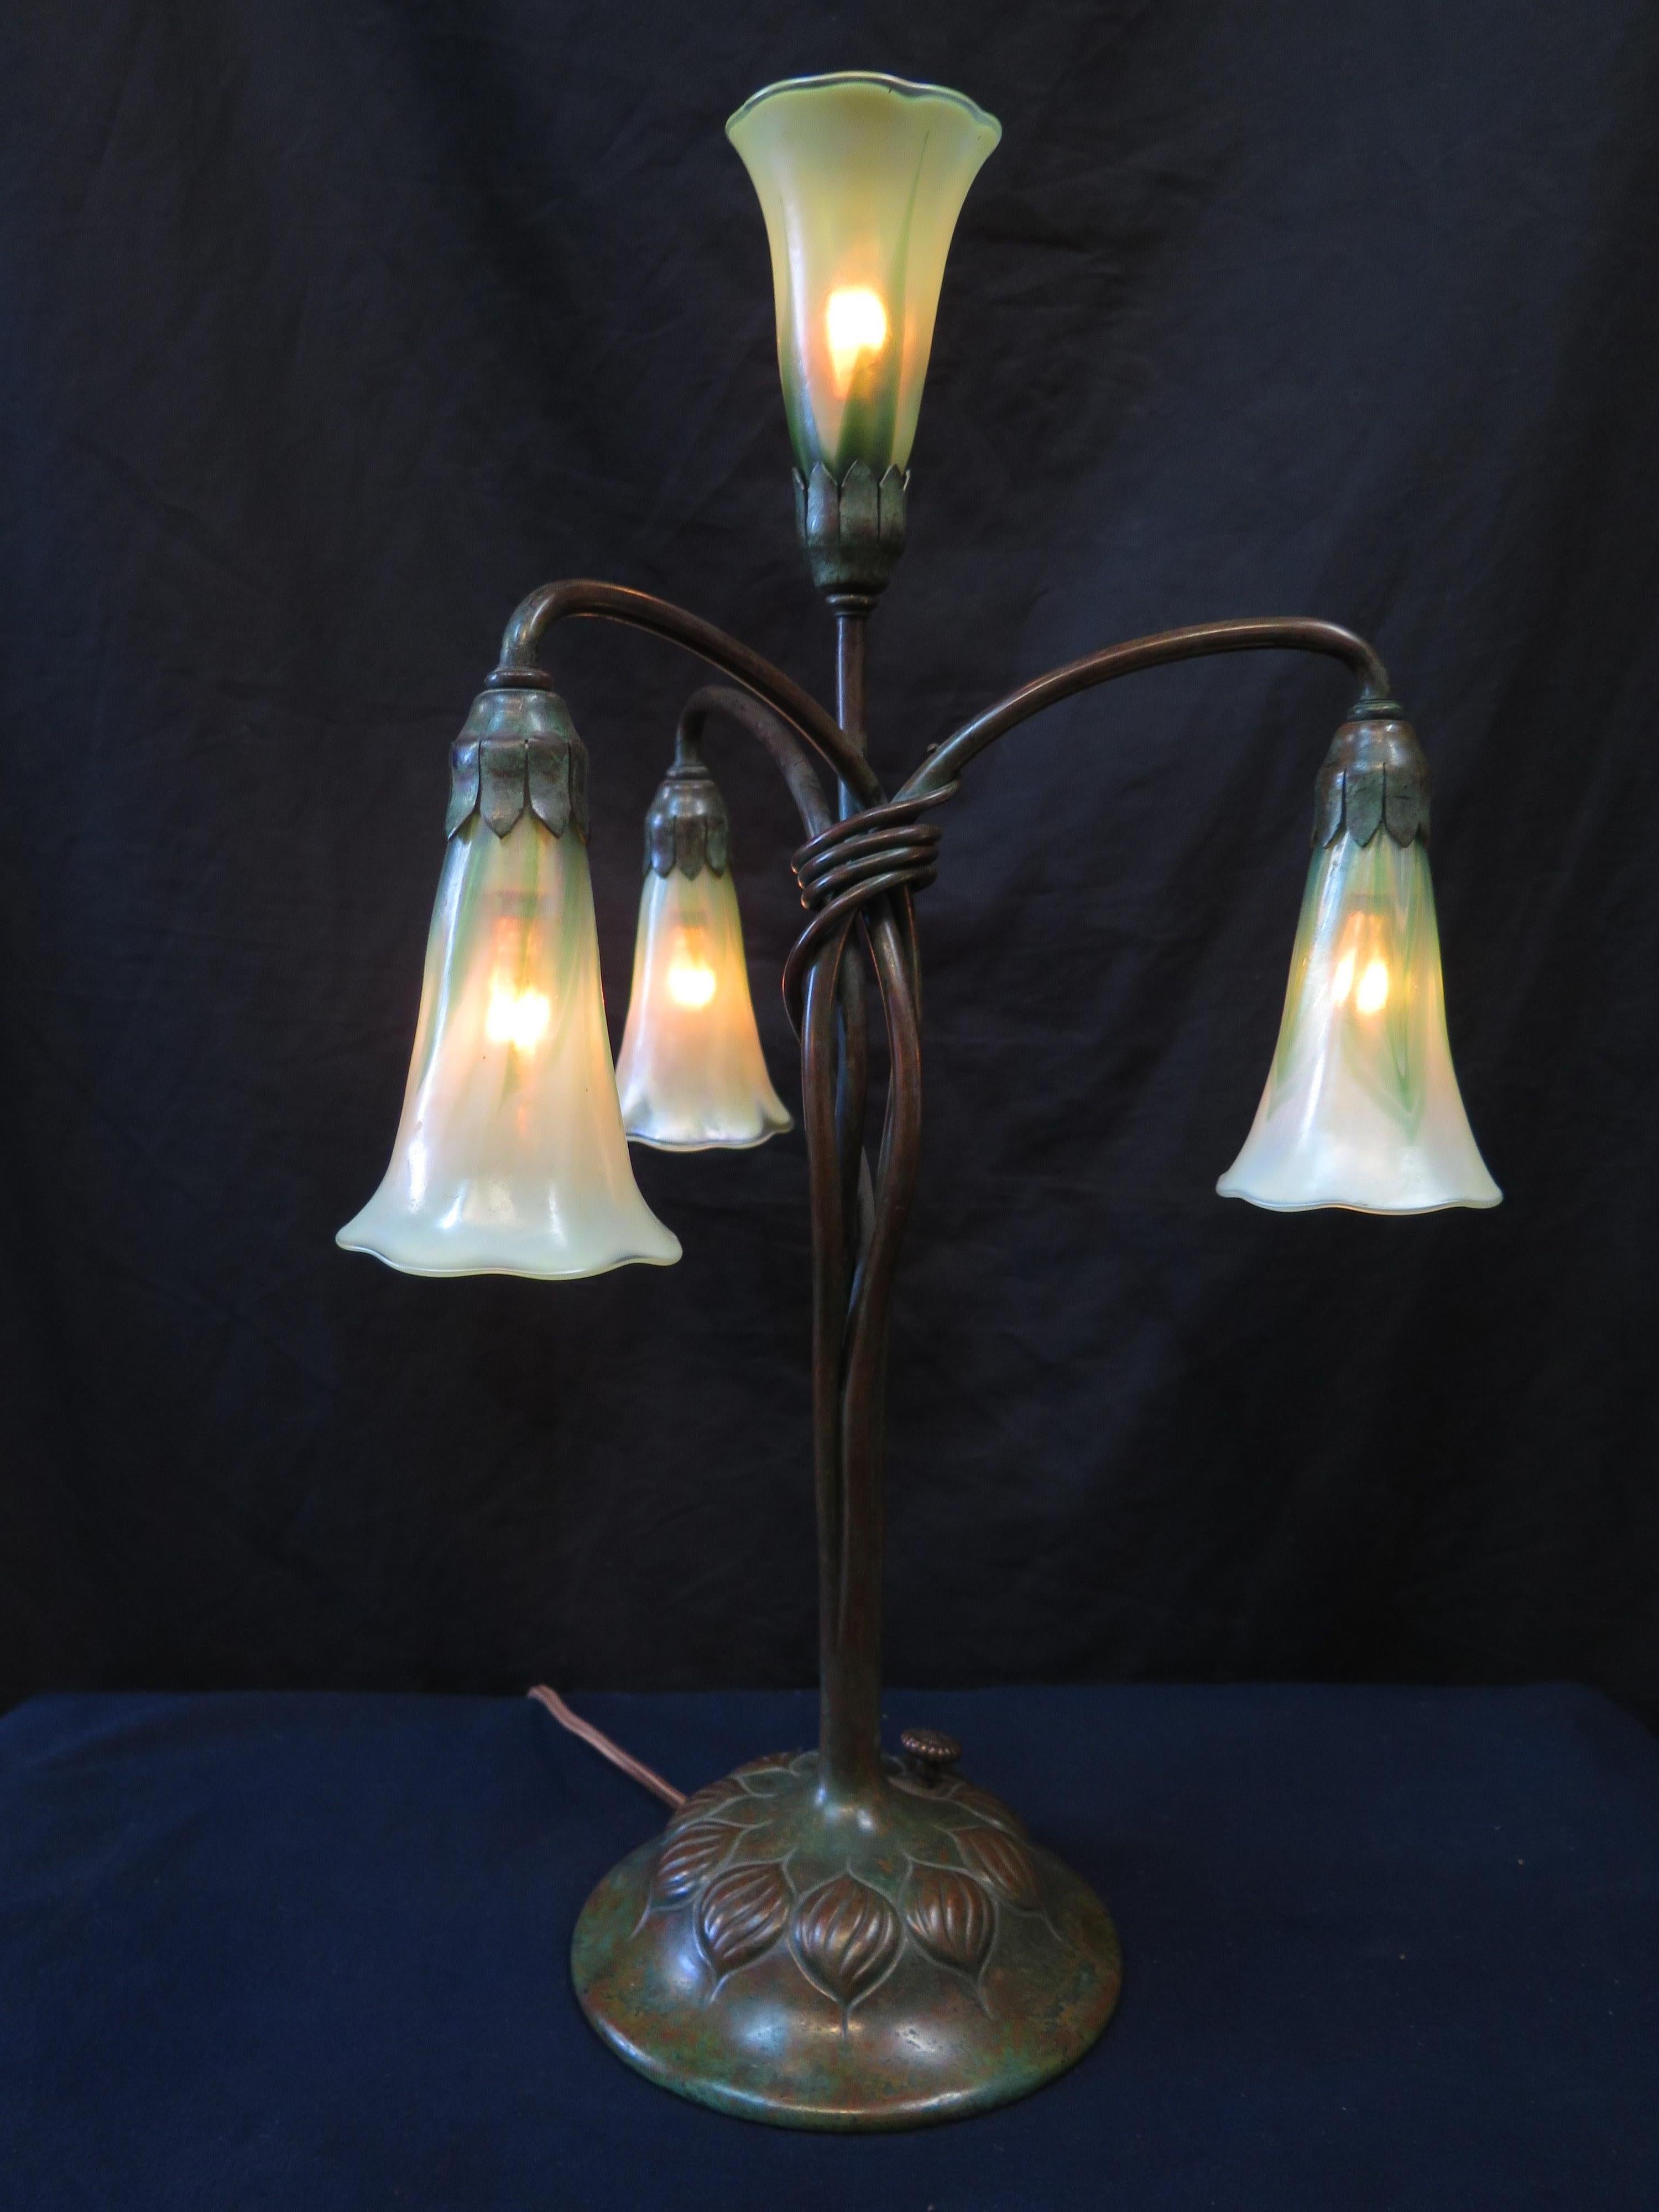 Diese frühe vierflammige Lilien-Tischlampe wurde in den frühen 1900er Jahren von den Tiffany Studios in New York hergestellt. Der stilvolle Sockel aus patinierter Bronze ist mit einem Zwiebelmotiv verziert und weist vier anmutige röhrenförmige